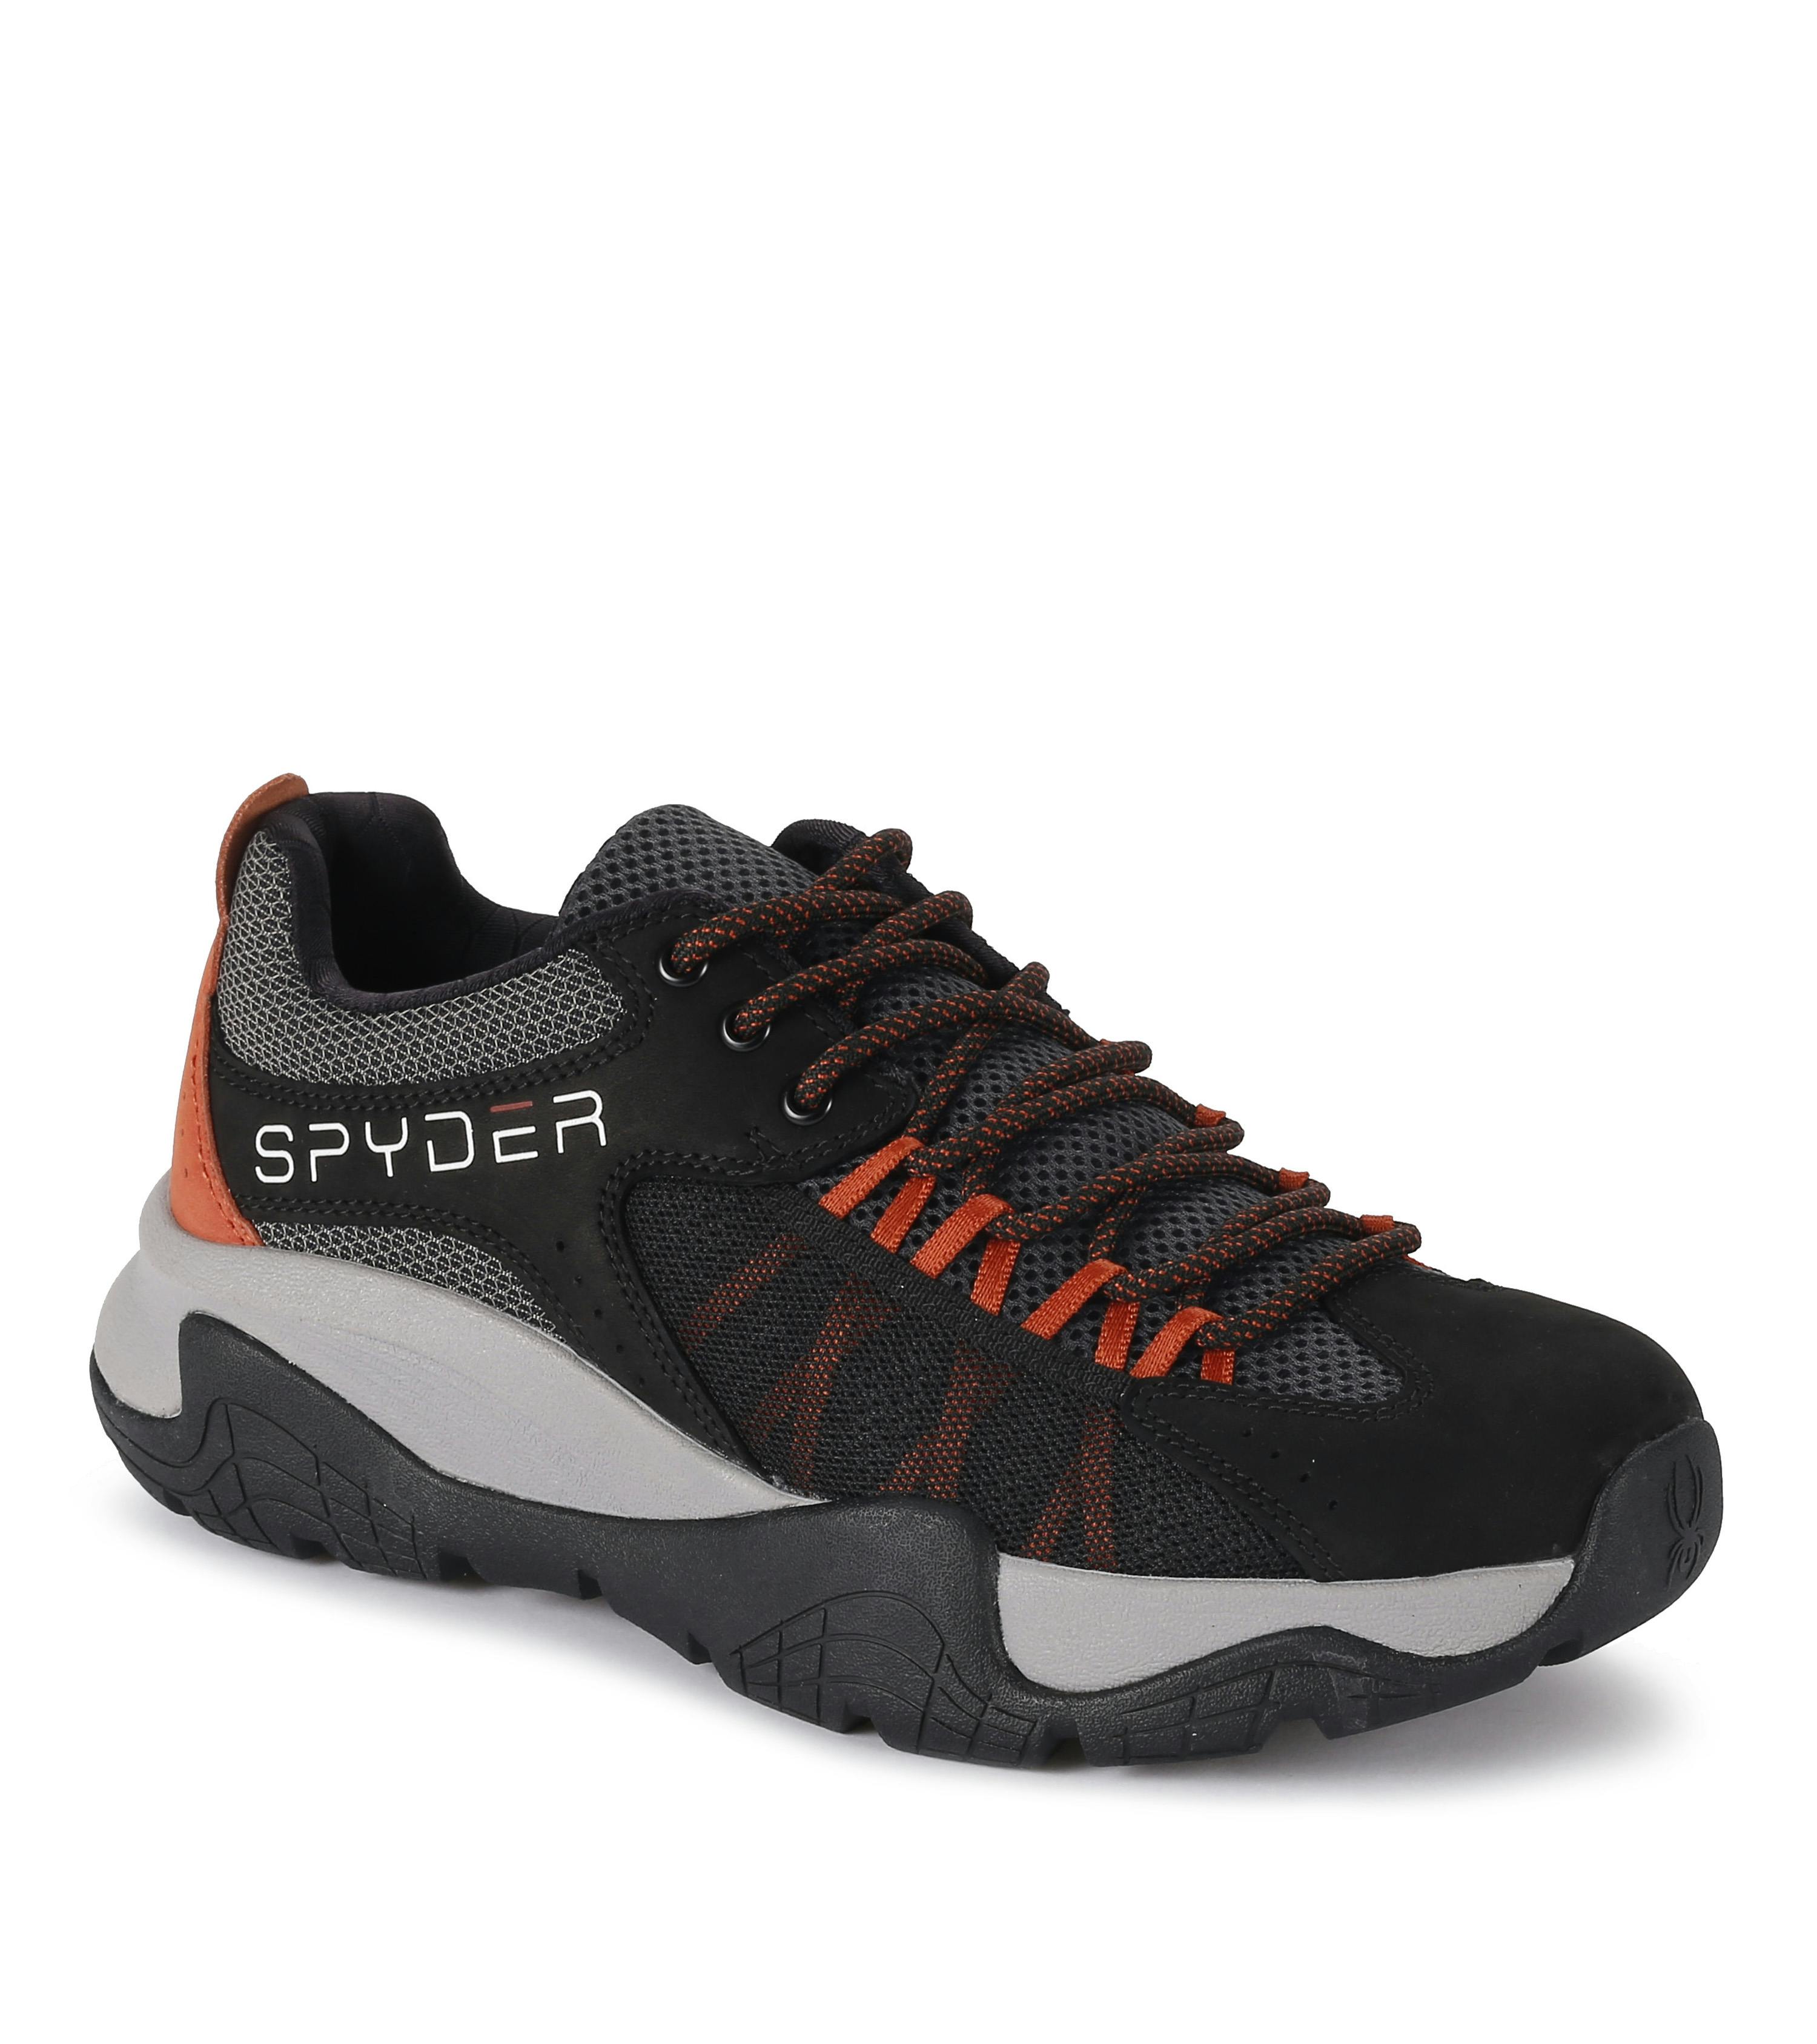 Spyder Men's Boundary Shoes